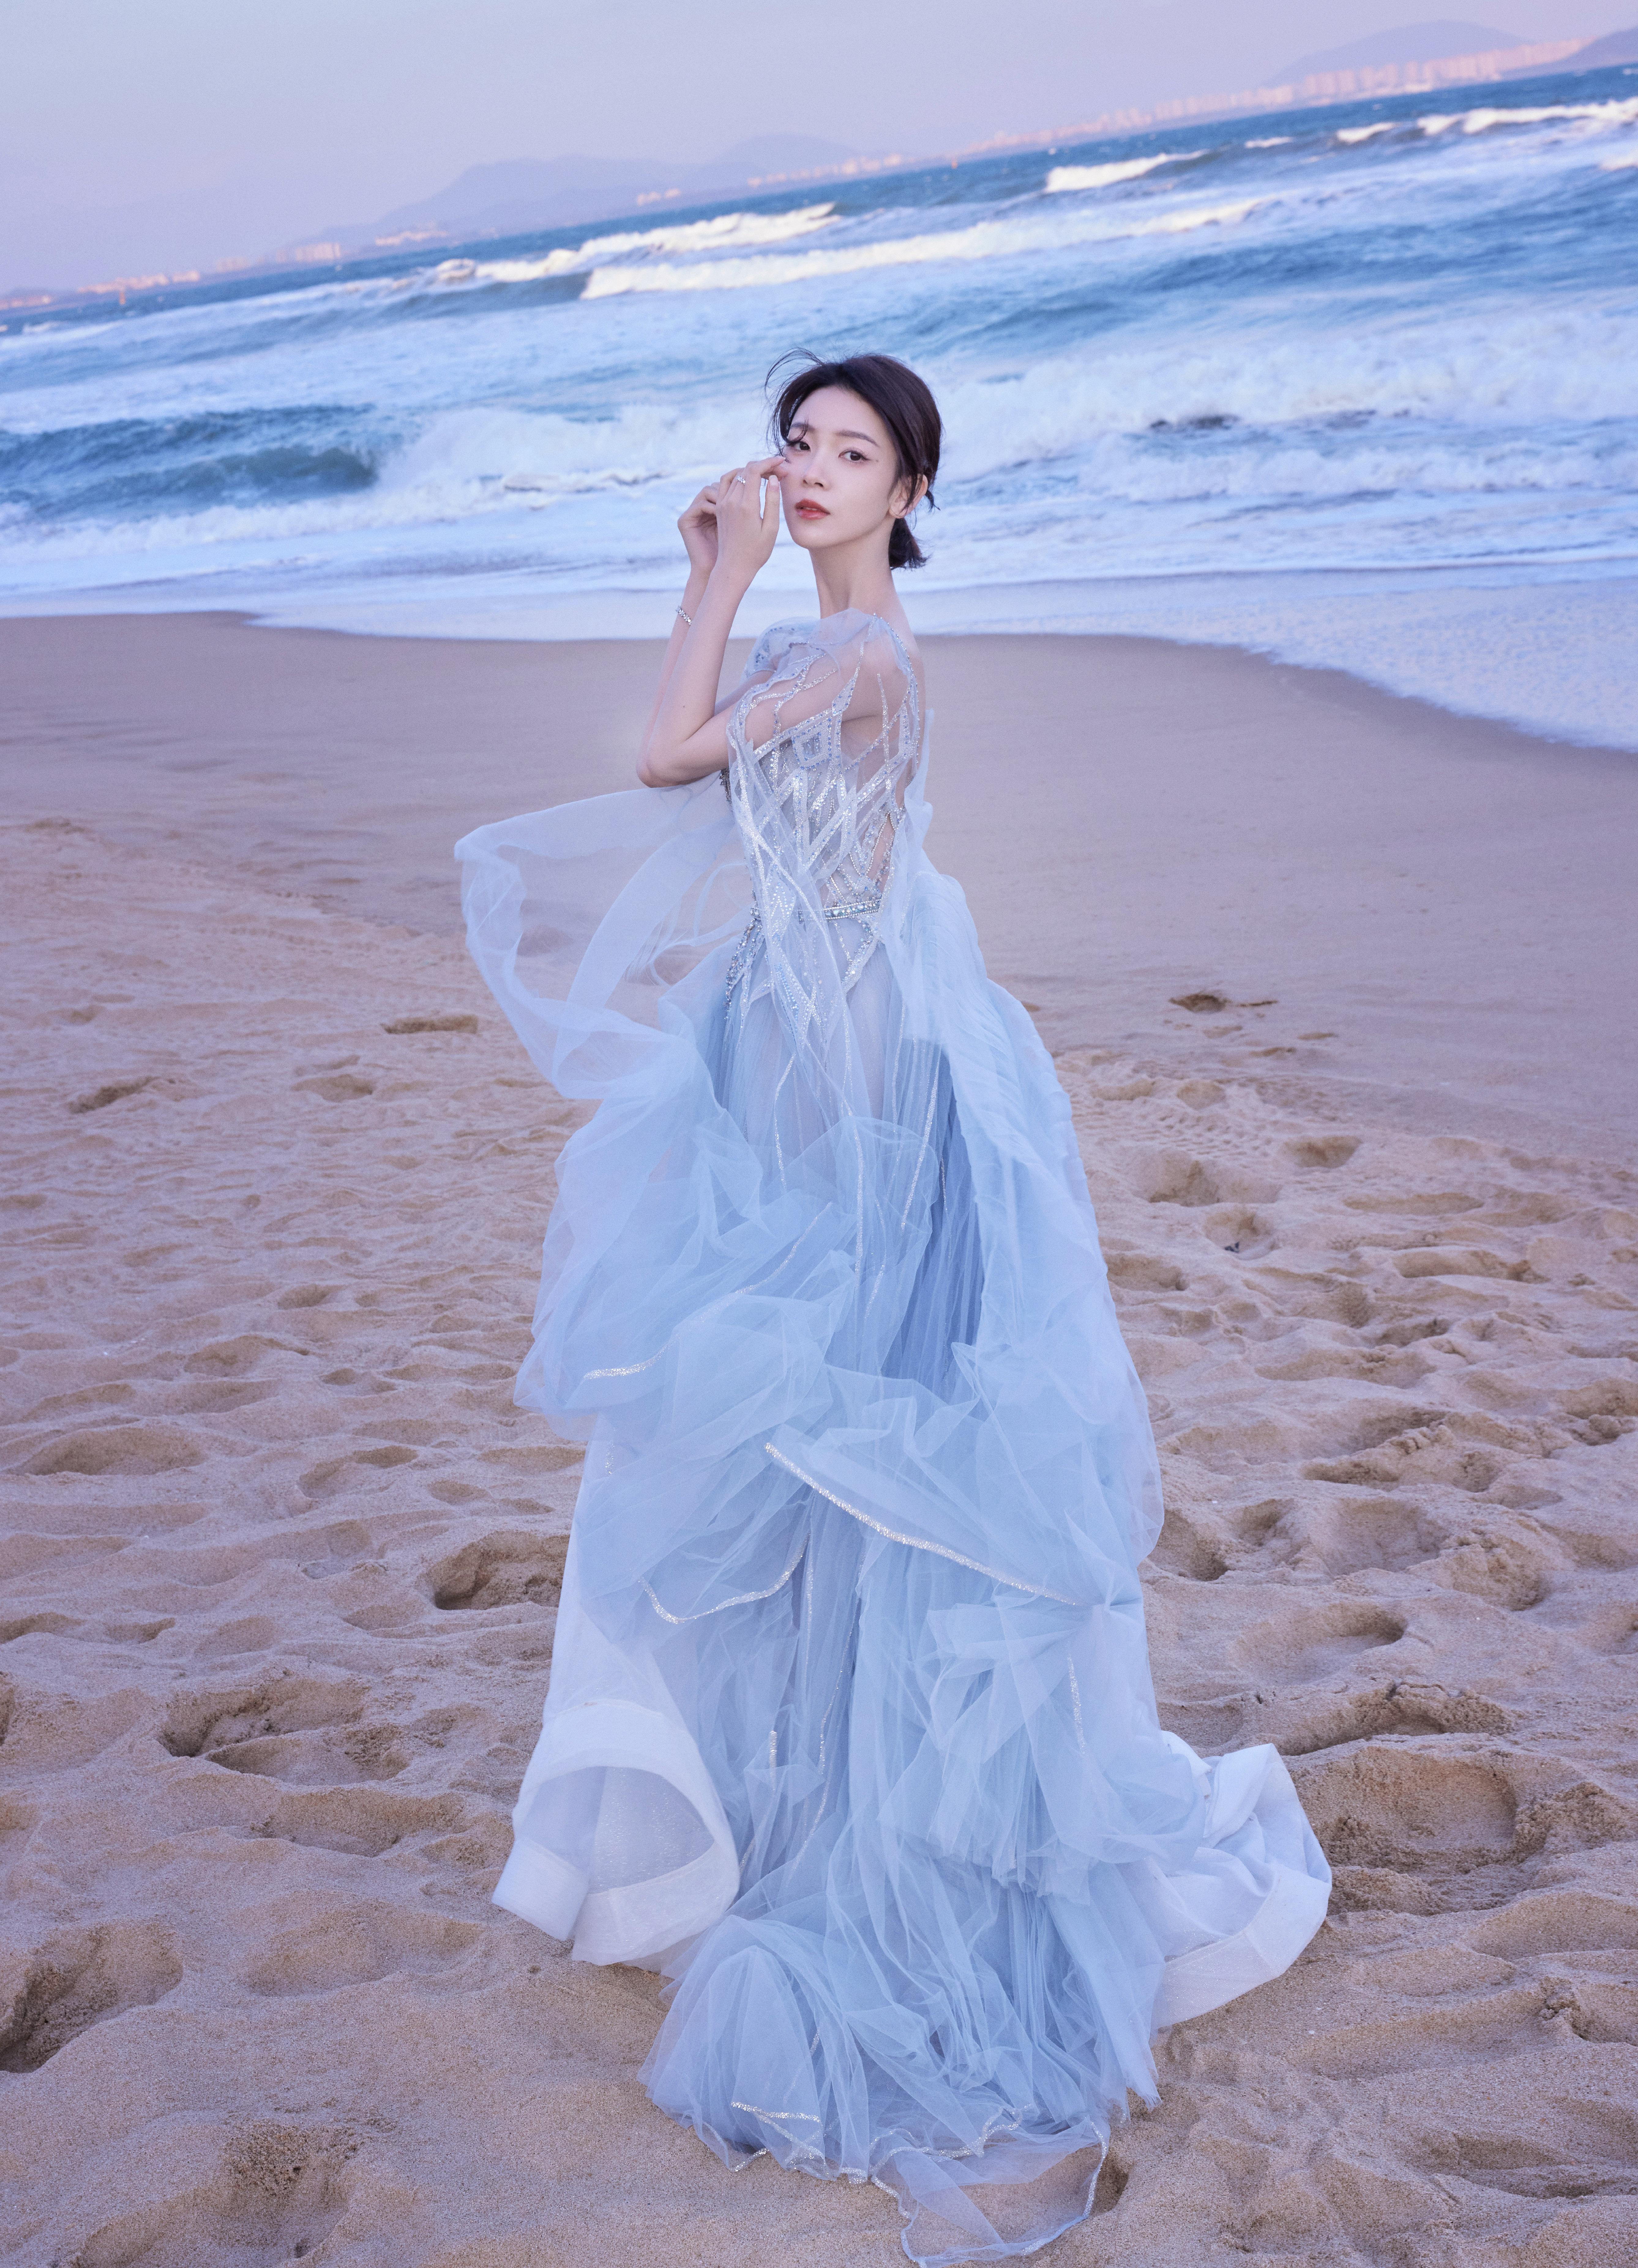 仙女姐姐陈瑶沙滩写真 蓝色透视连身礼裙优雅迷人！,1 (11)